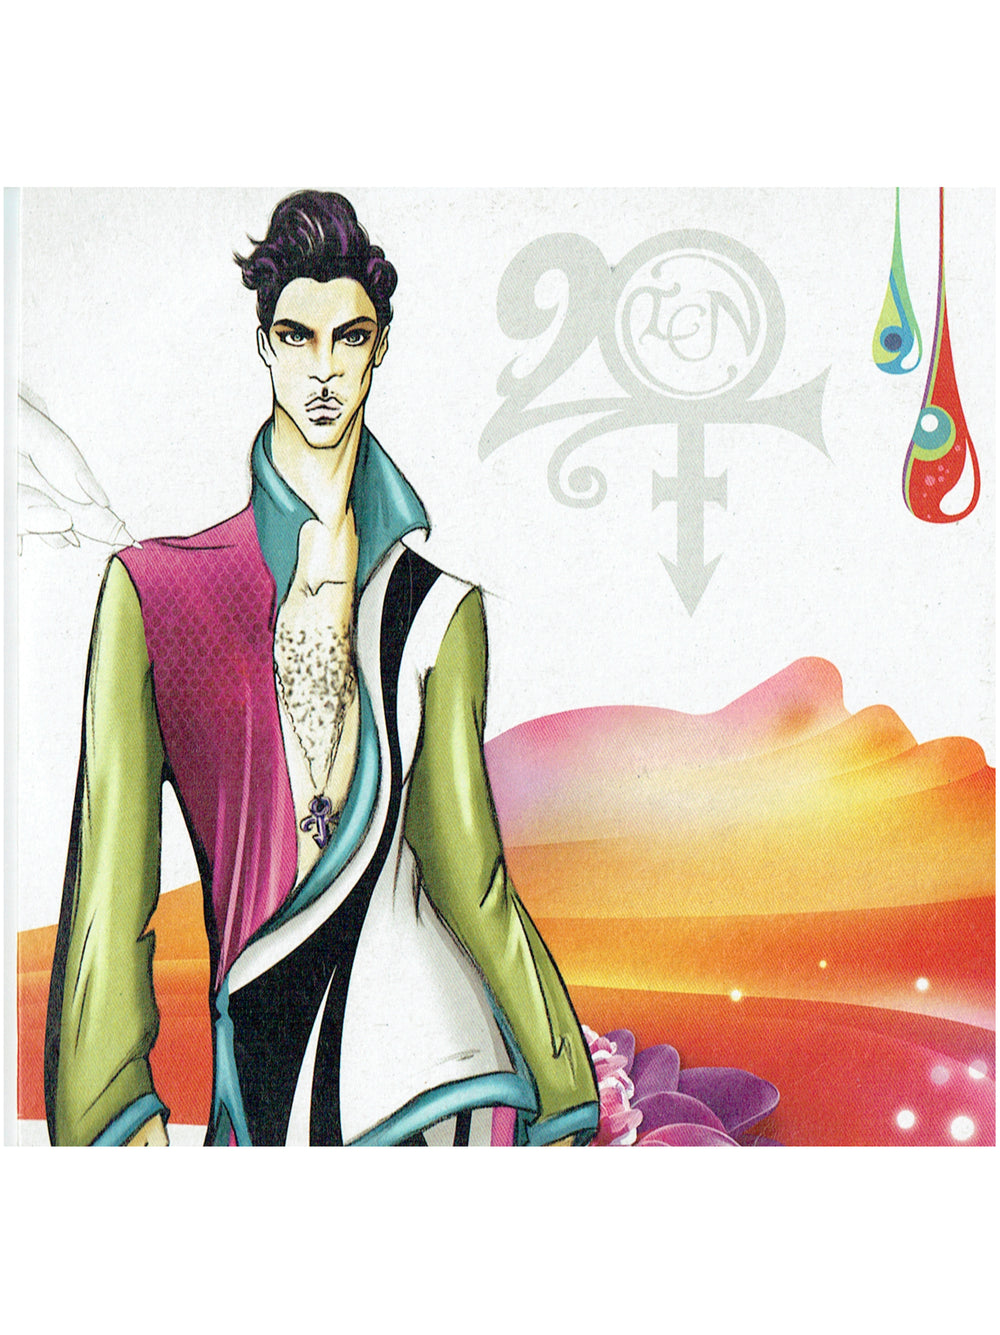 Prince – 20TEN CD Album Promo Matte Sleeve EU Preloved: 2010